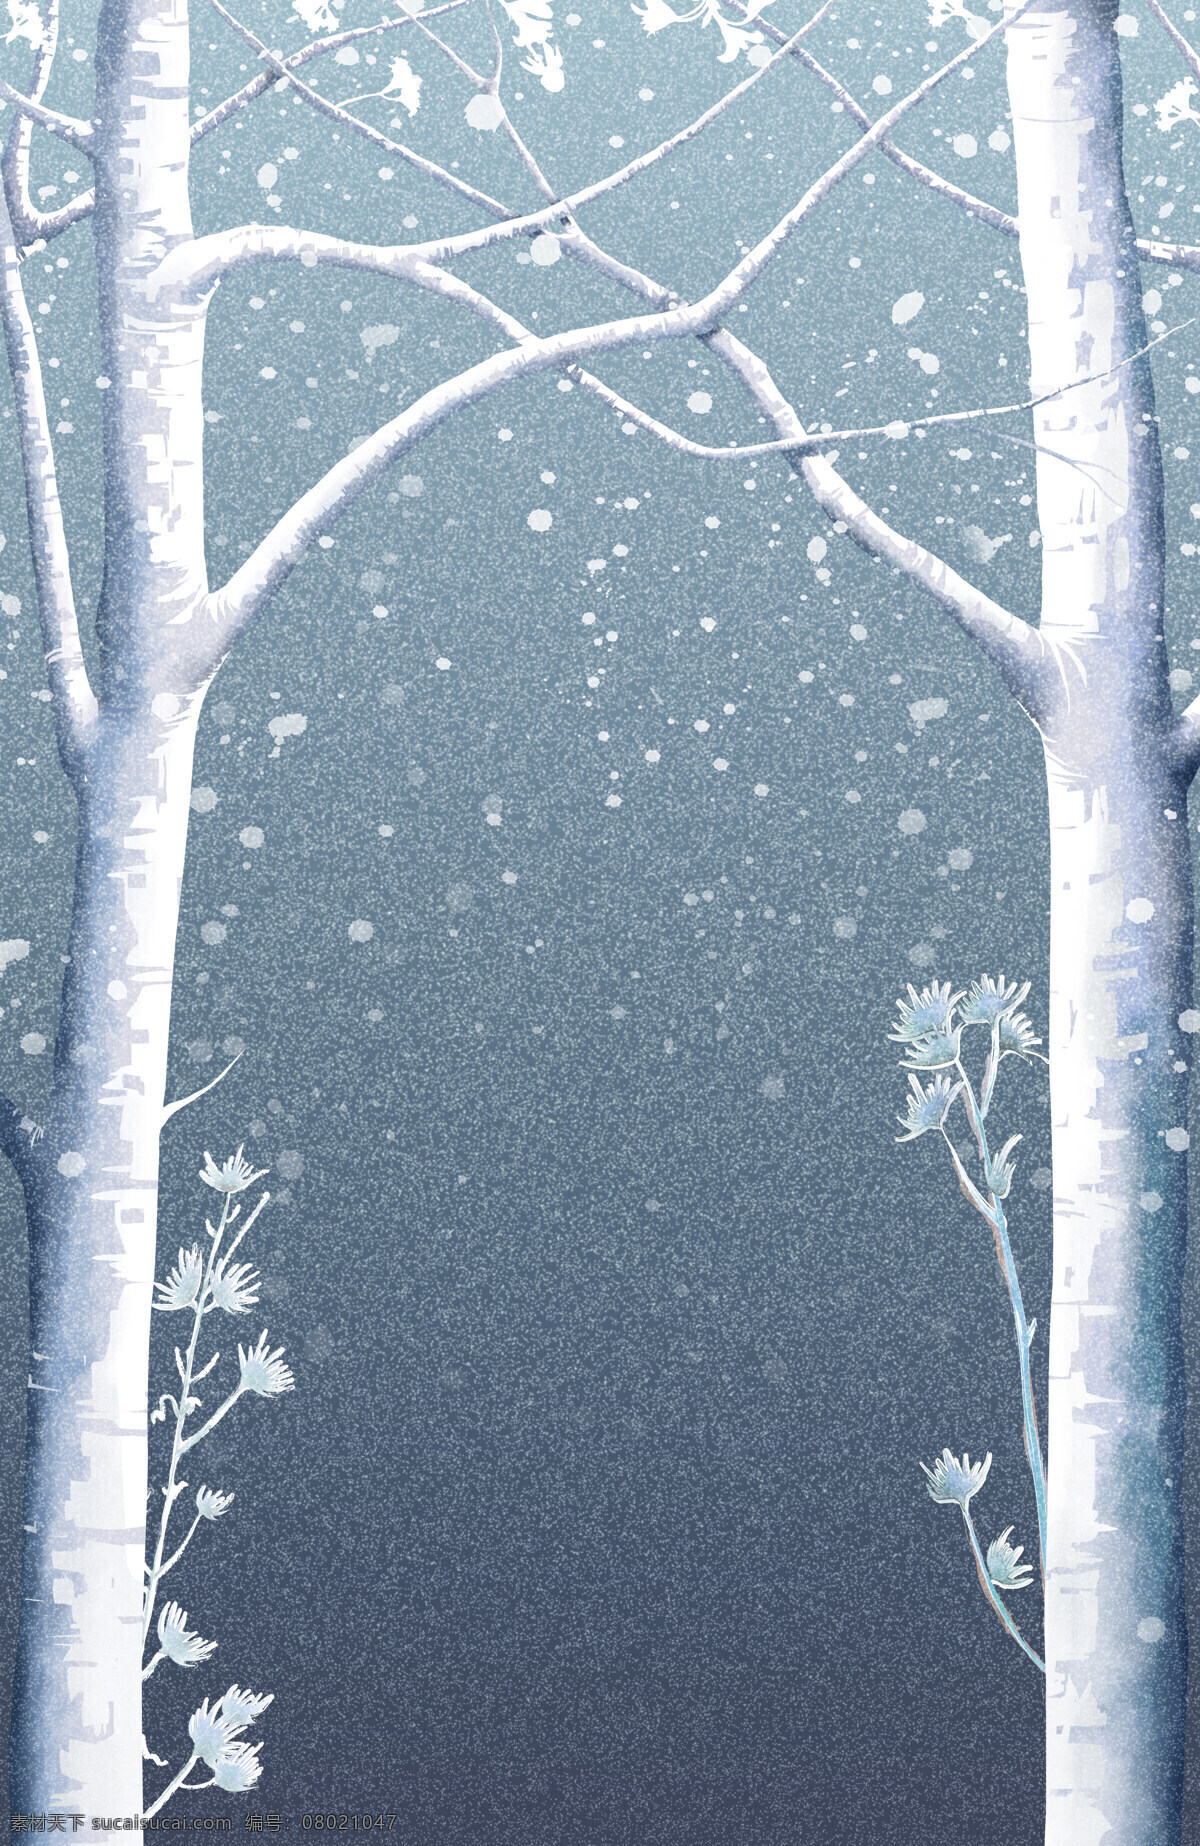 冬季 下雪 户外 风景 植物 雪花 插画 树 背景 噪点